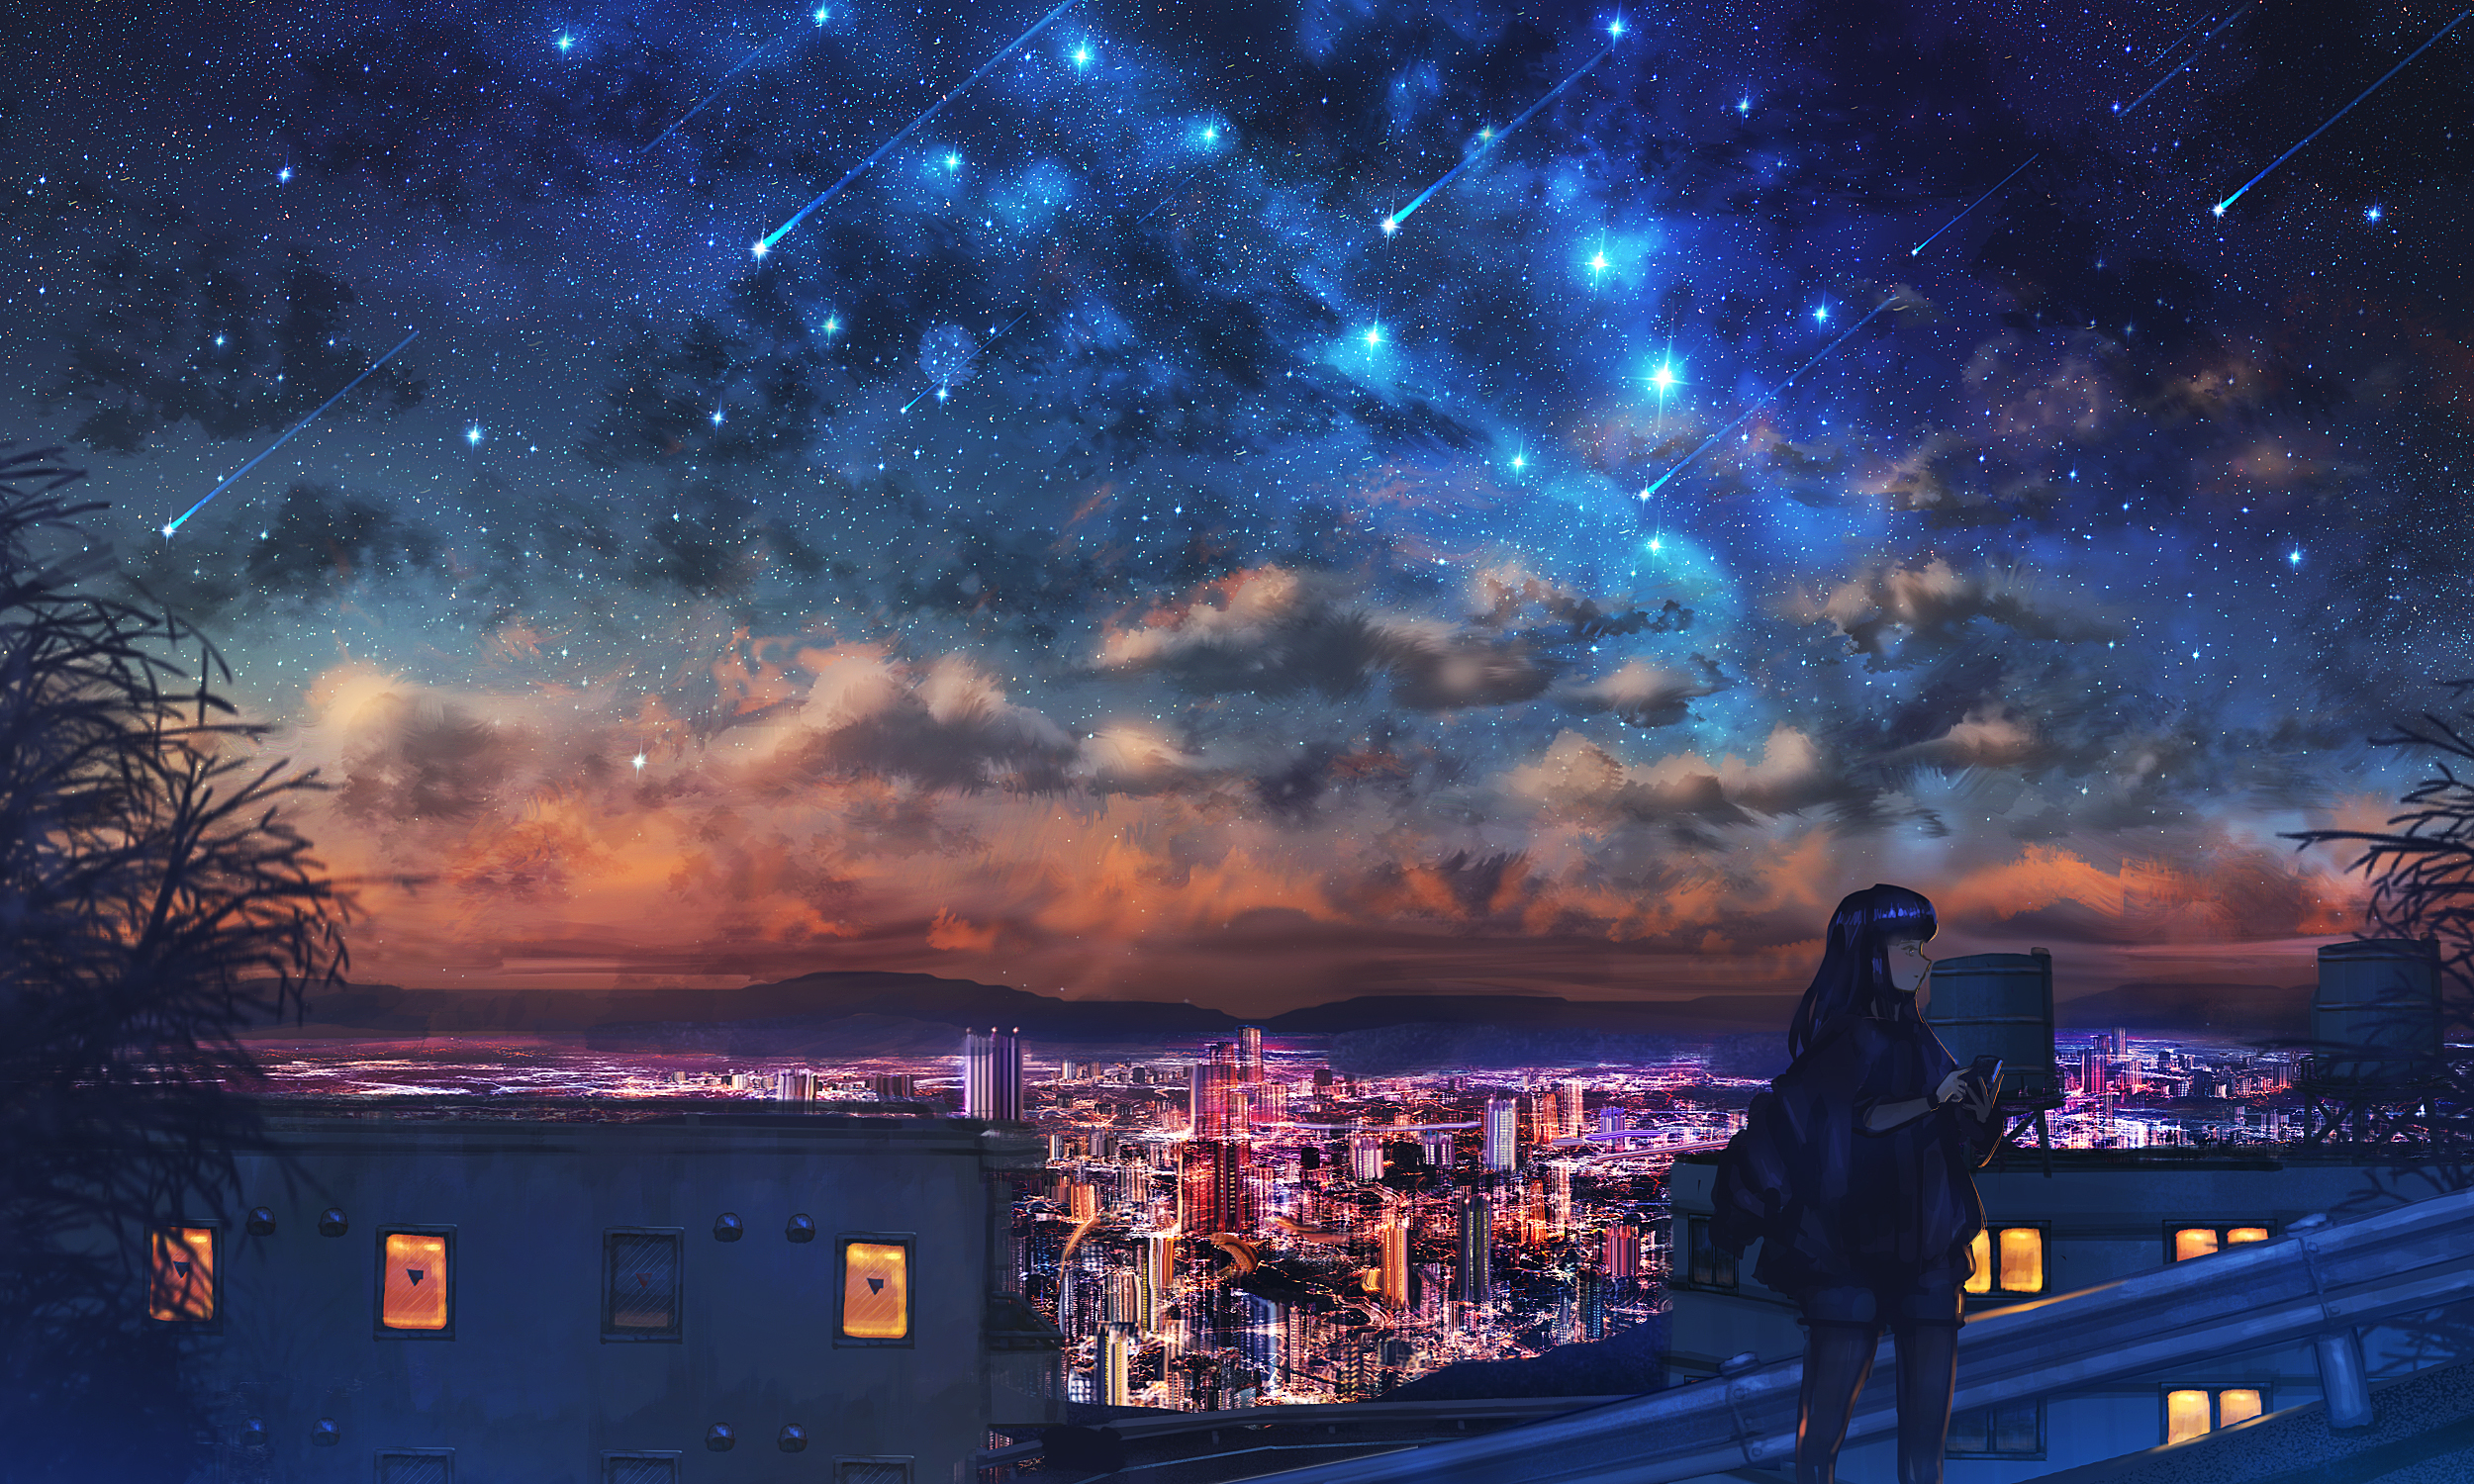 Hình ảnh Anime girl đô thị bầu trời đêm Nakomo sẽ mang lại cho bạn một trải nghiệm đầy cảm hứng và bí ẩn. Với sự kết hợp giữa vẻ đẹp của cô gái xinh đẹp với sự mê hoặc của đêm tối đầy sao, cảm giác hứng khởi sẽ đến với bạn ngay tức thì.